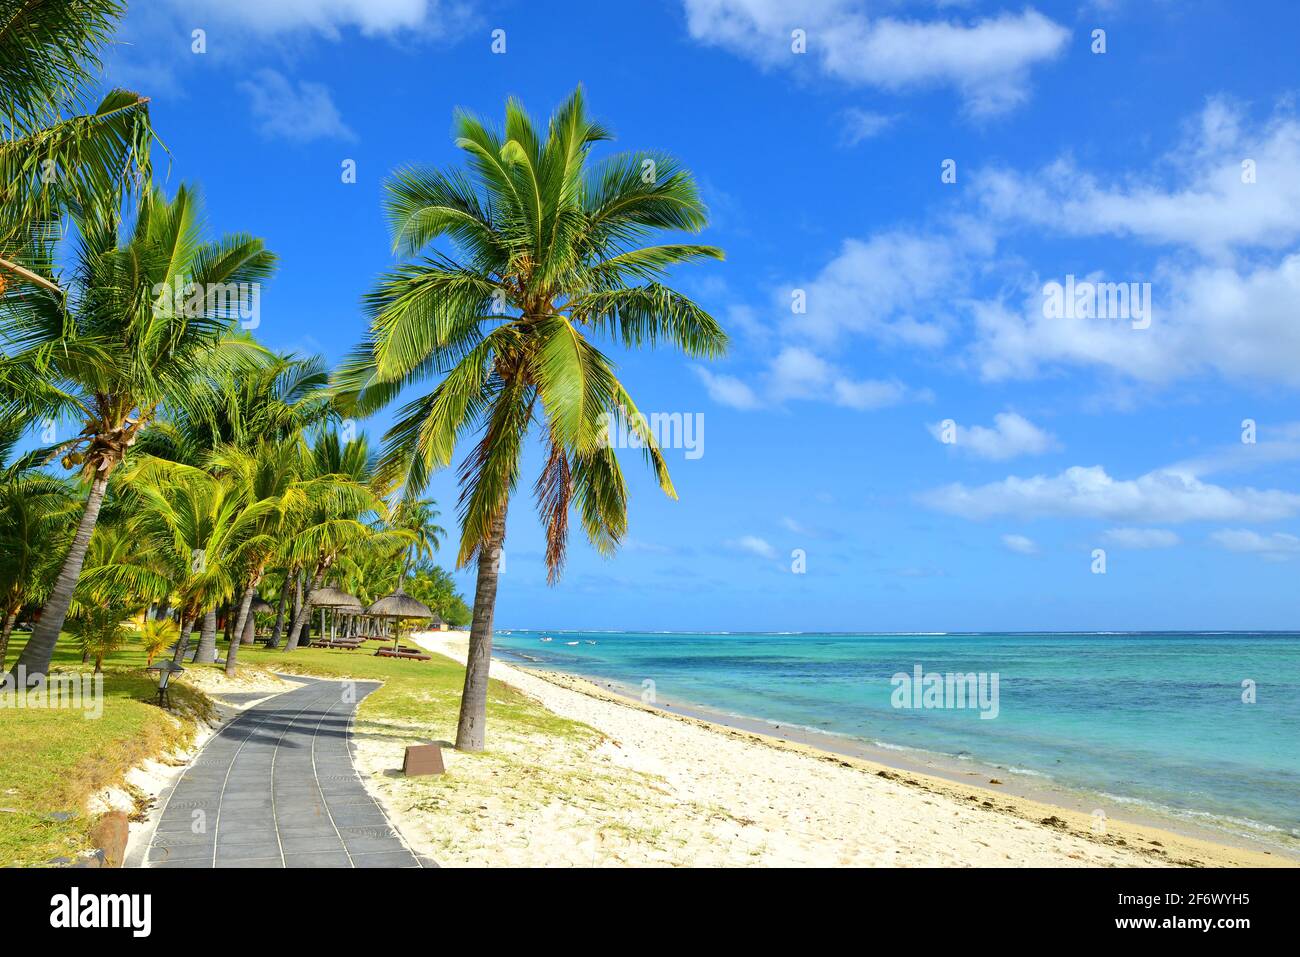 Palmeras de coco en la playa de arena tropical de la isla Mauricio. Océano Índico. Foto de stock